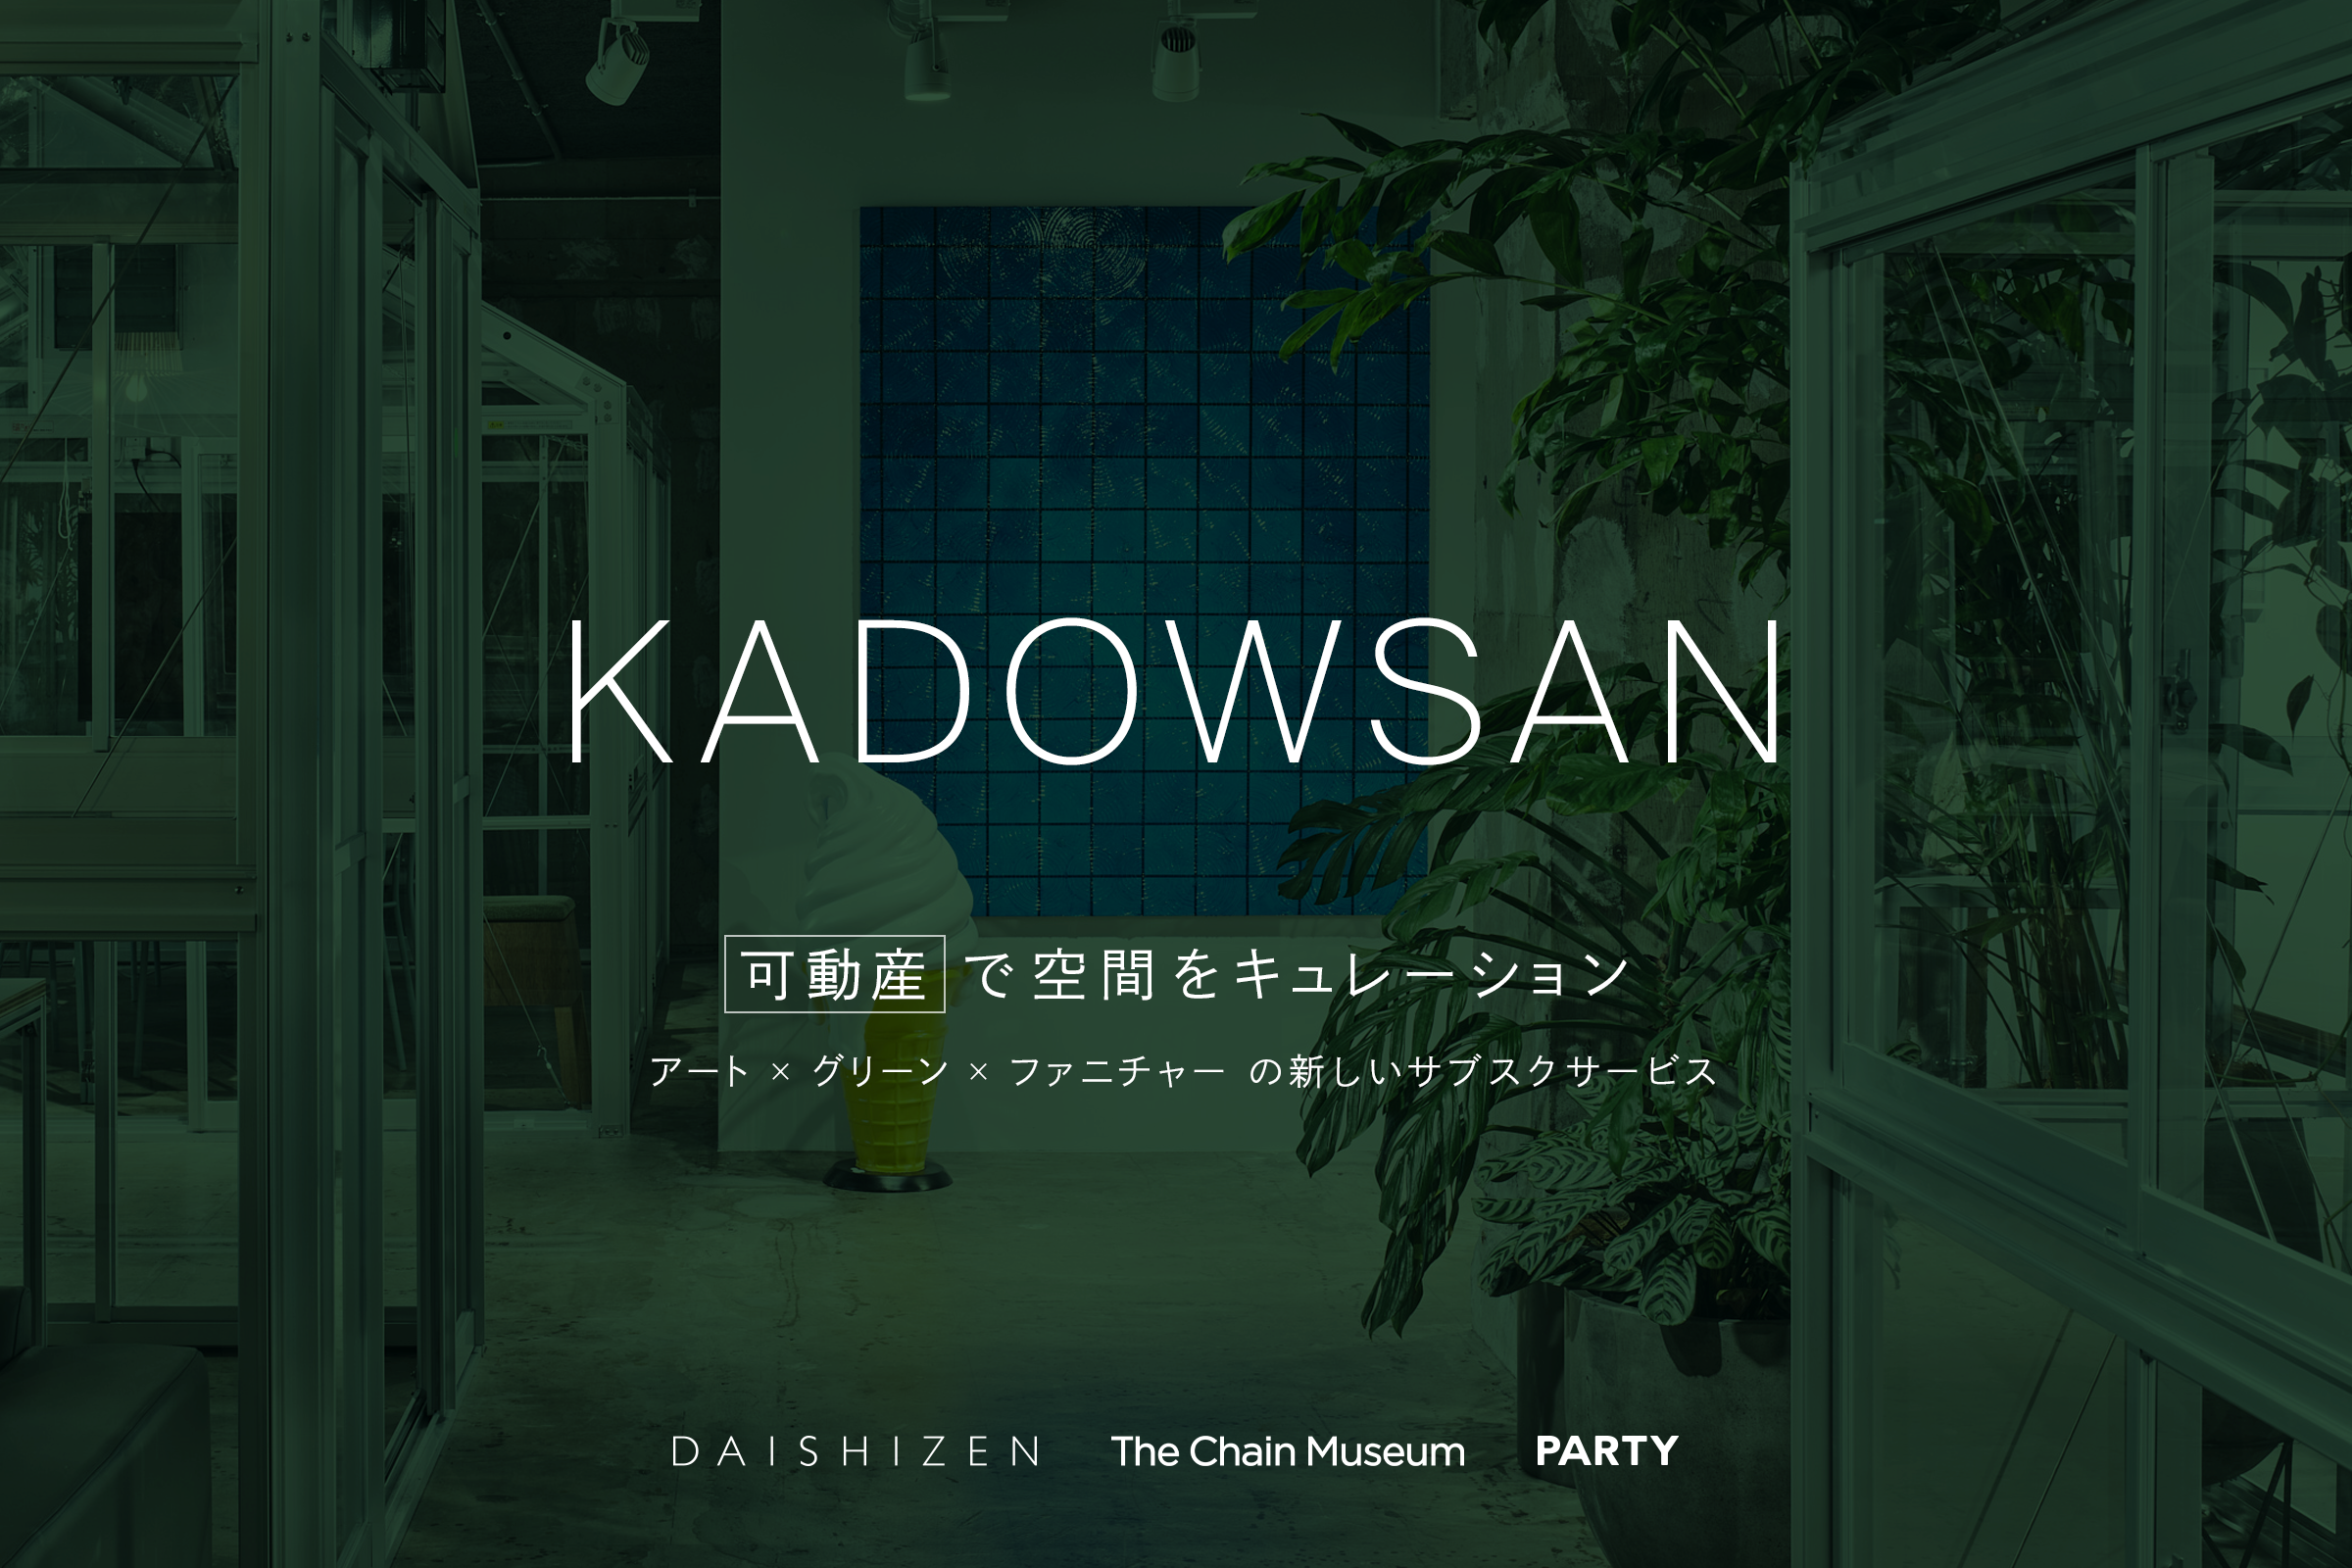 購入不要なアート・植物・家具の“可動産”サブスクで空間をプロデュース、新会社「KADOWSAN」が設立